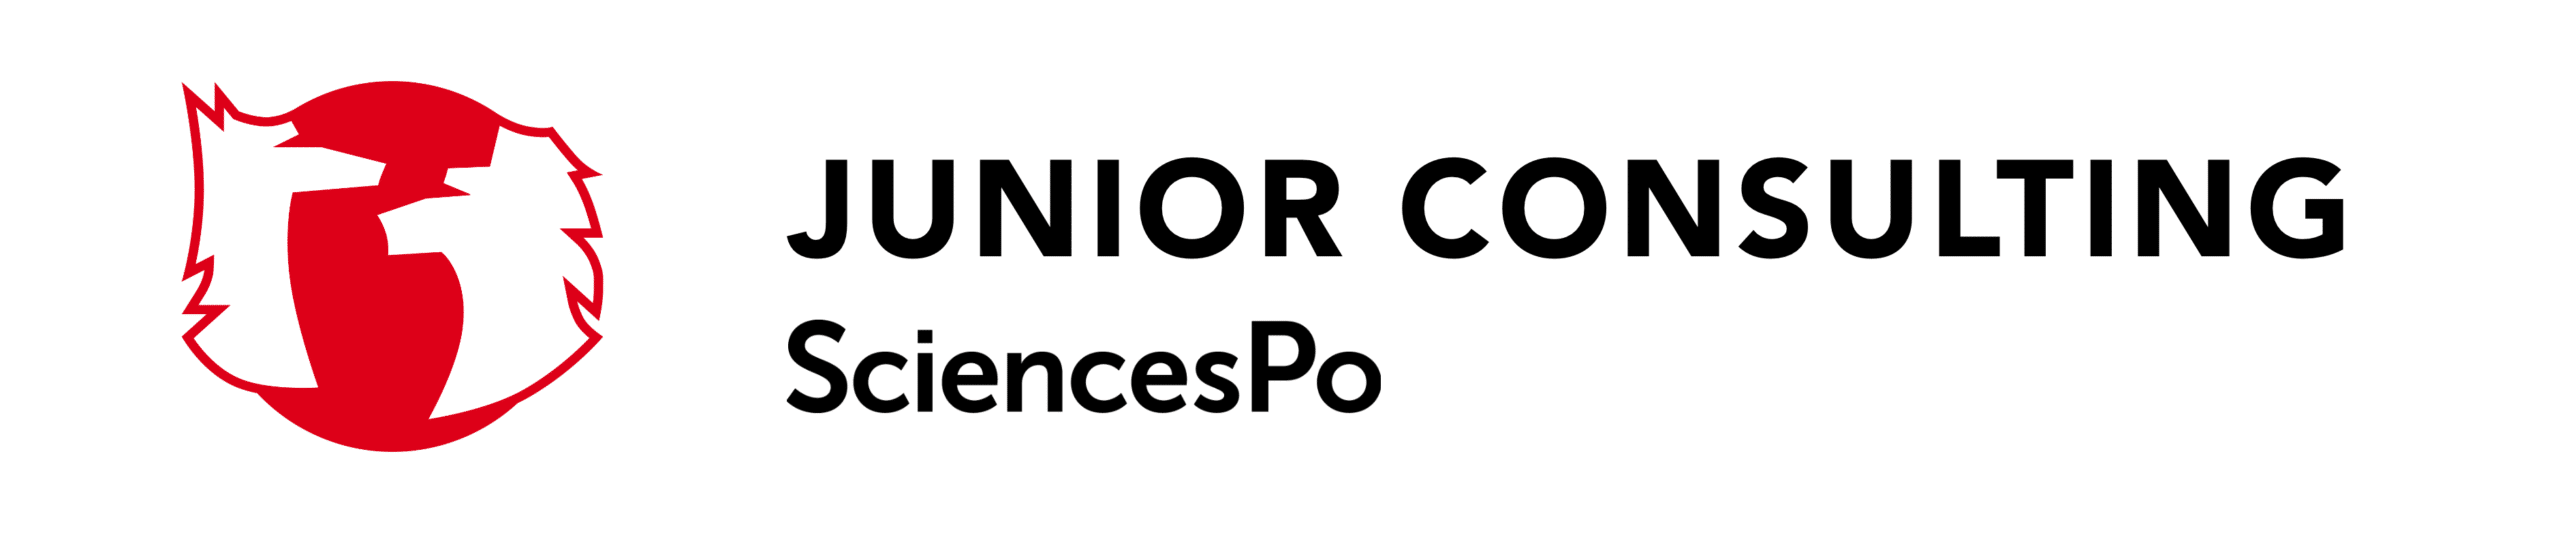 Junior-Consulting-SciencesPo